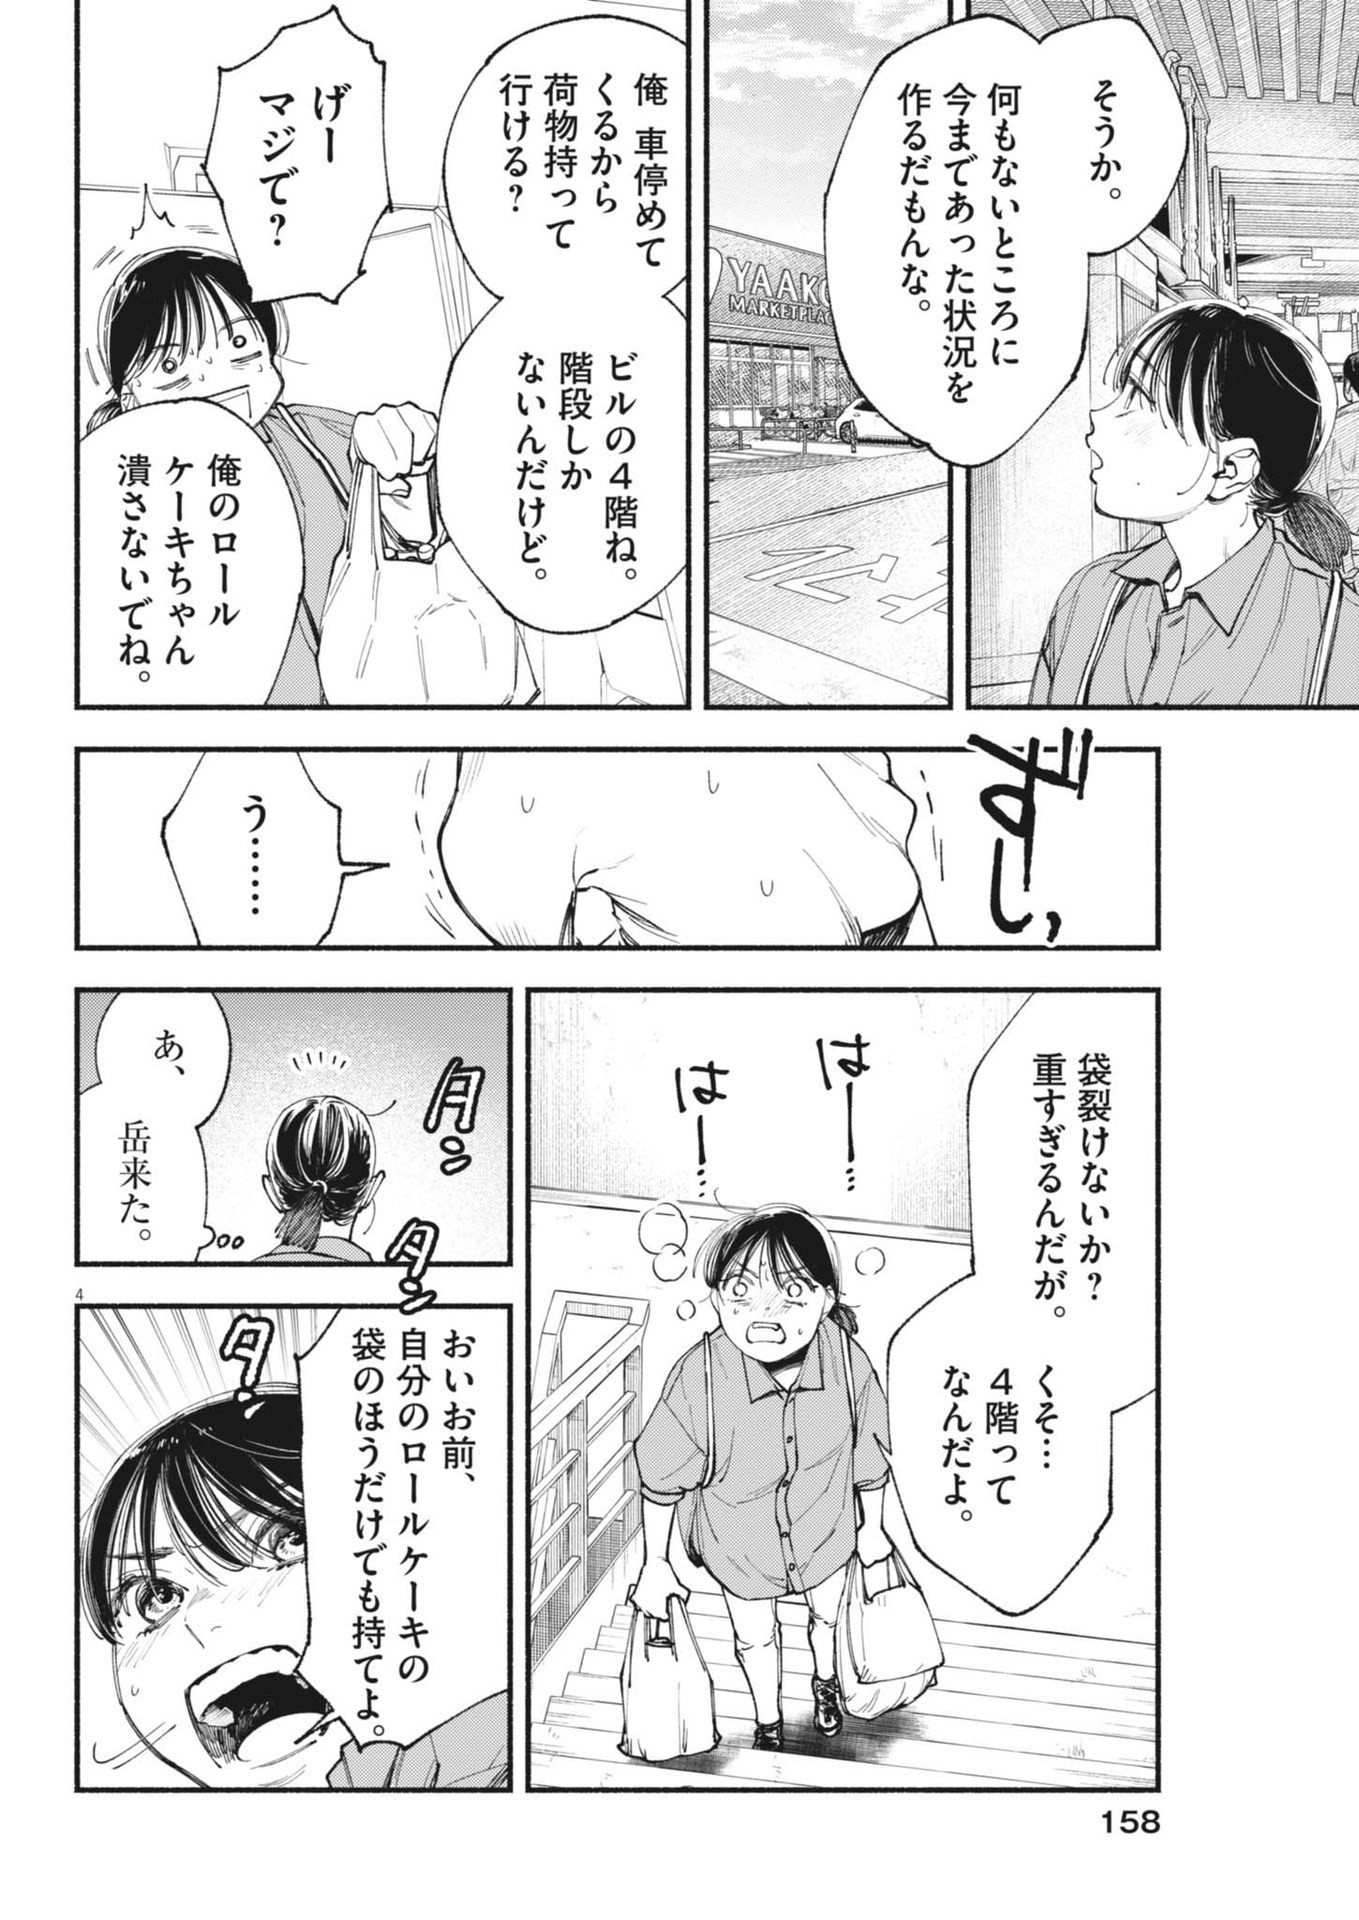 Konoyo wa Tatakau Kachi ga Aru  - Chapter 28 - Page 4